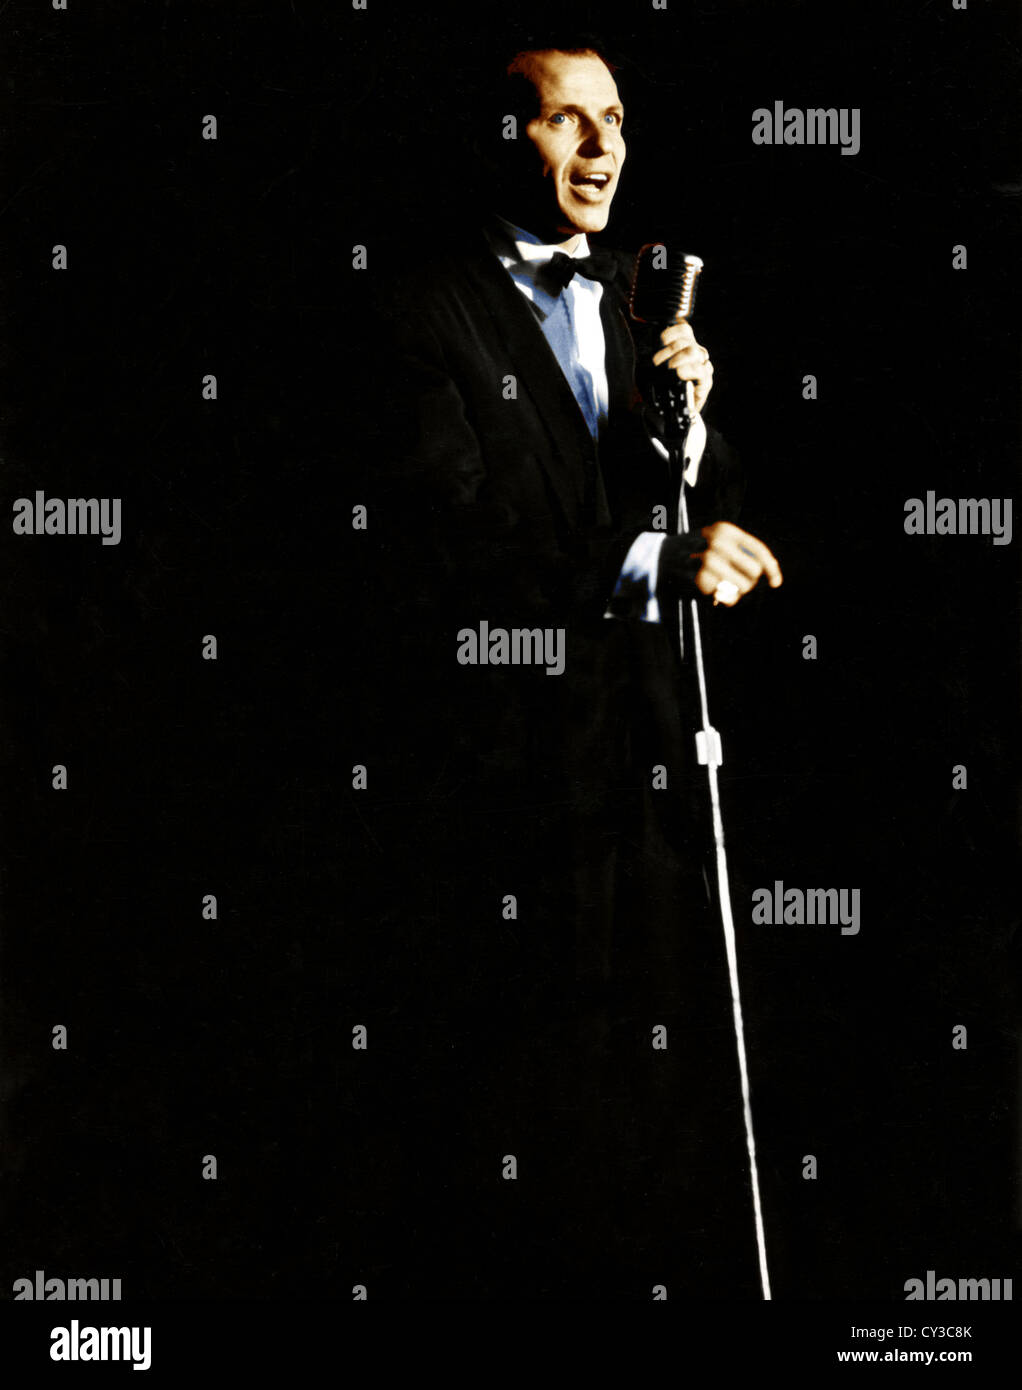 FRANK SINATRA (1915-1998), cantante y actor de cine estadounidense acerca de 1966 Foto de stock